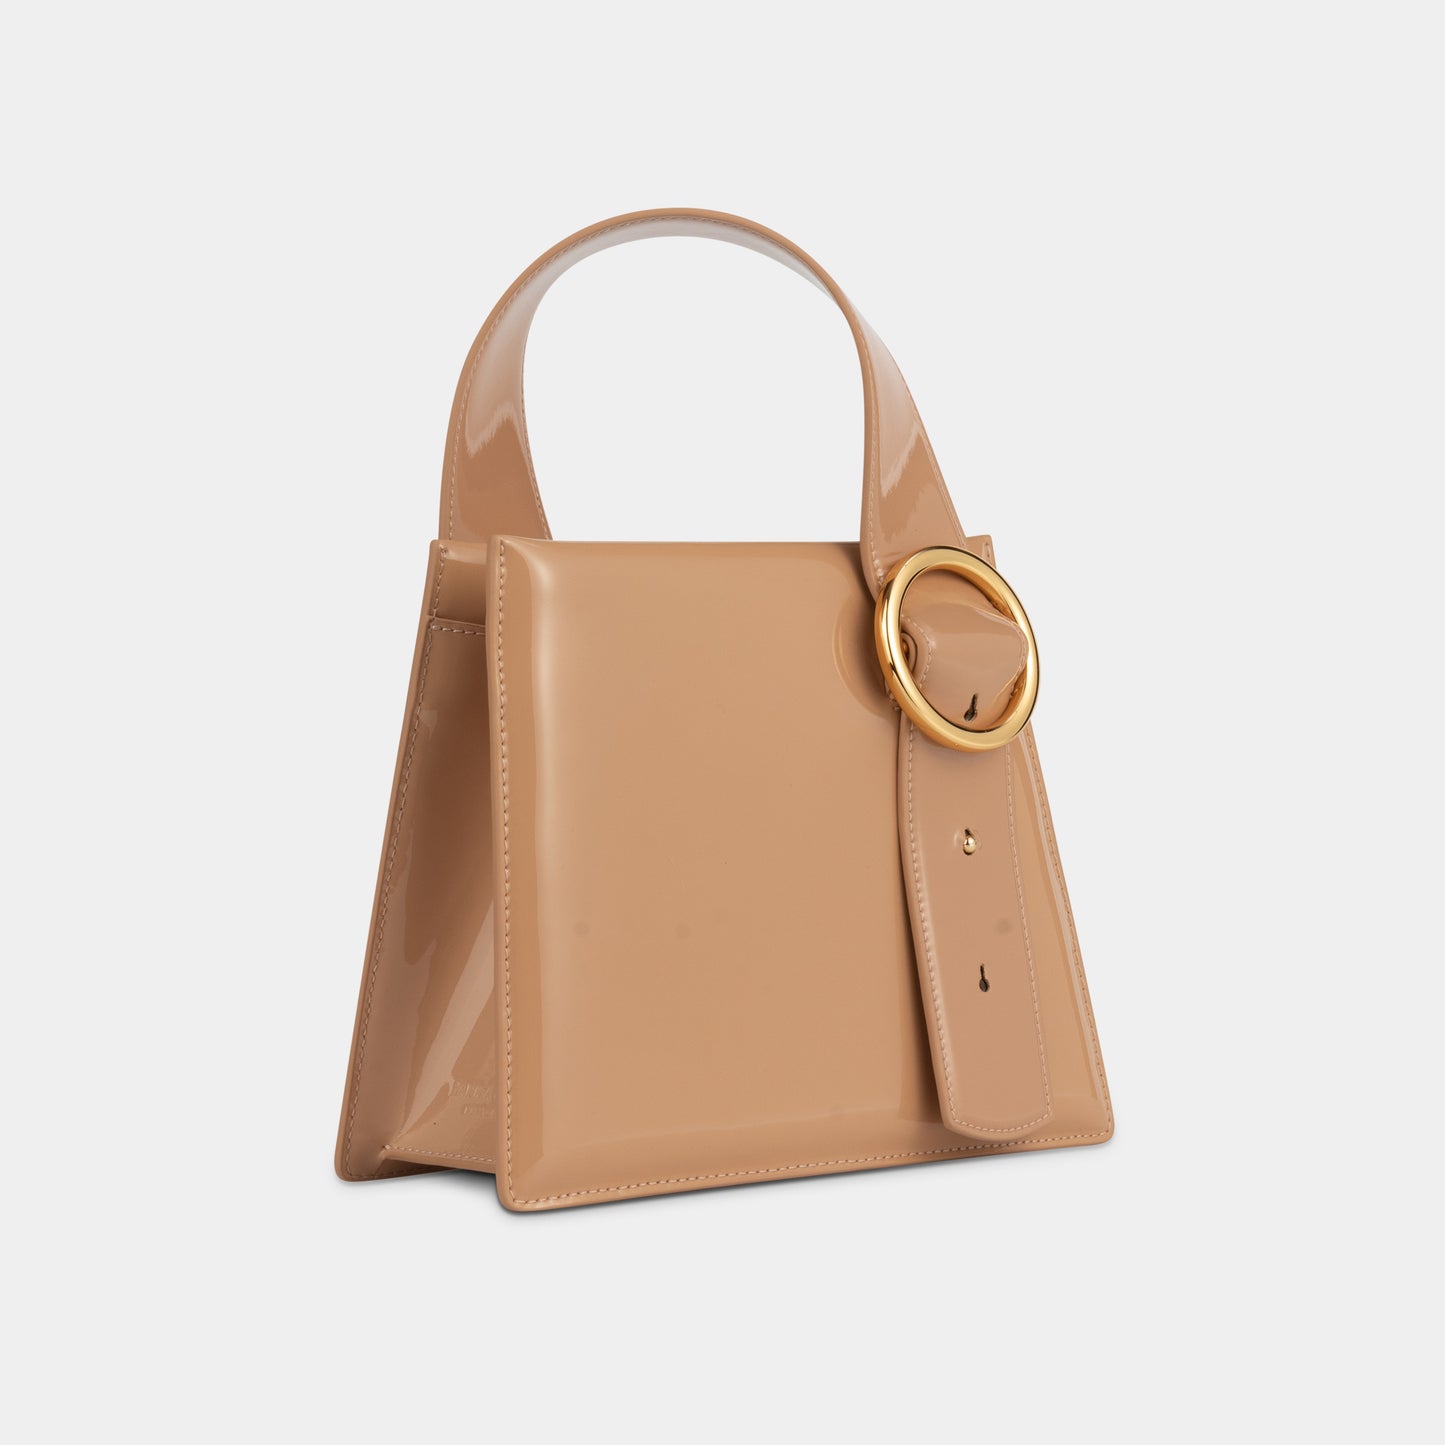 Enchanted Top Handle Bag in Peach | Parisa Wang